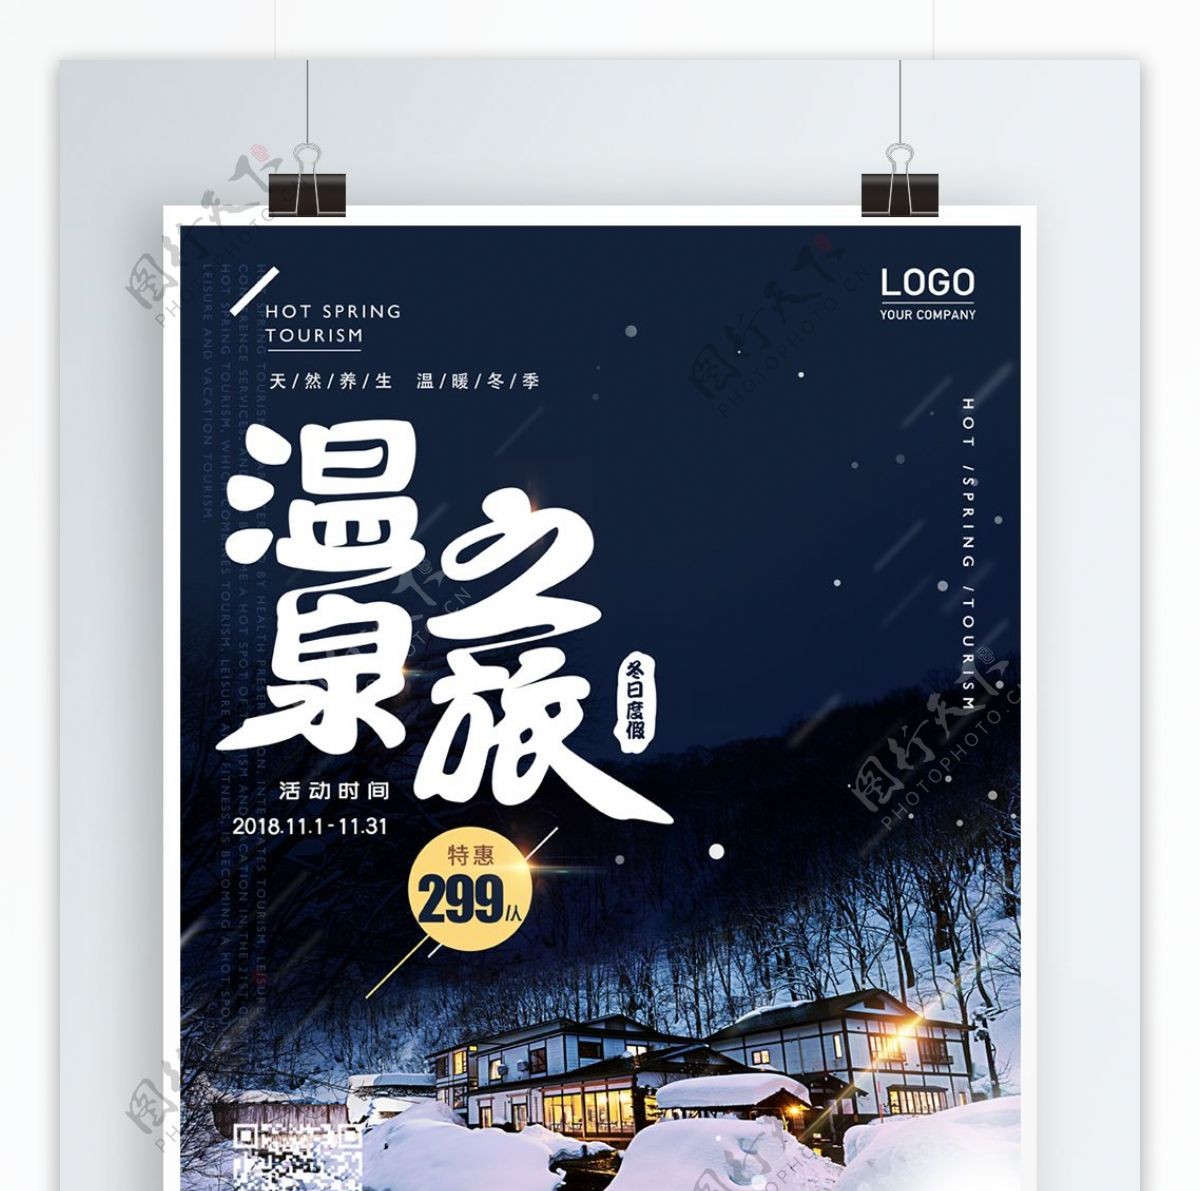 原创冬季温泉旅行酒店养生温泉促销打折海报